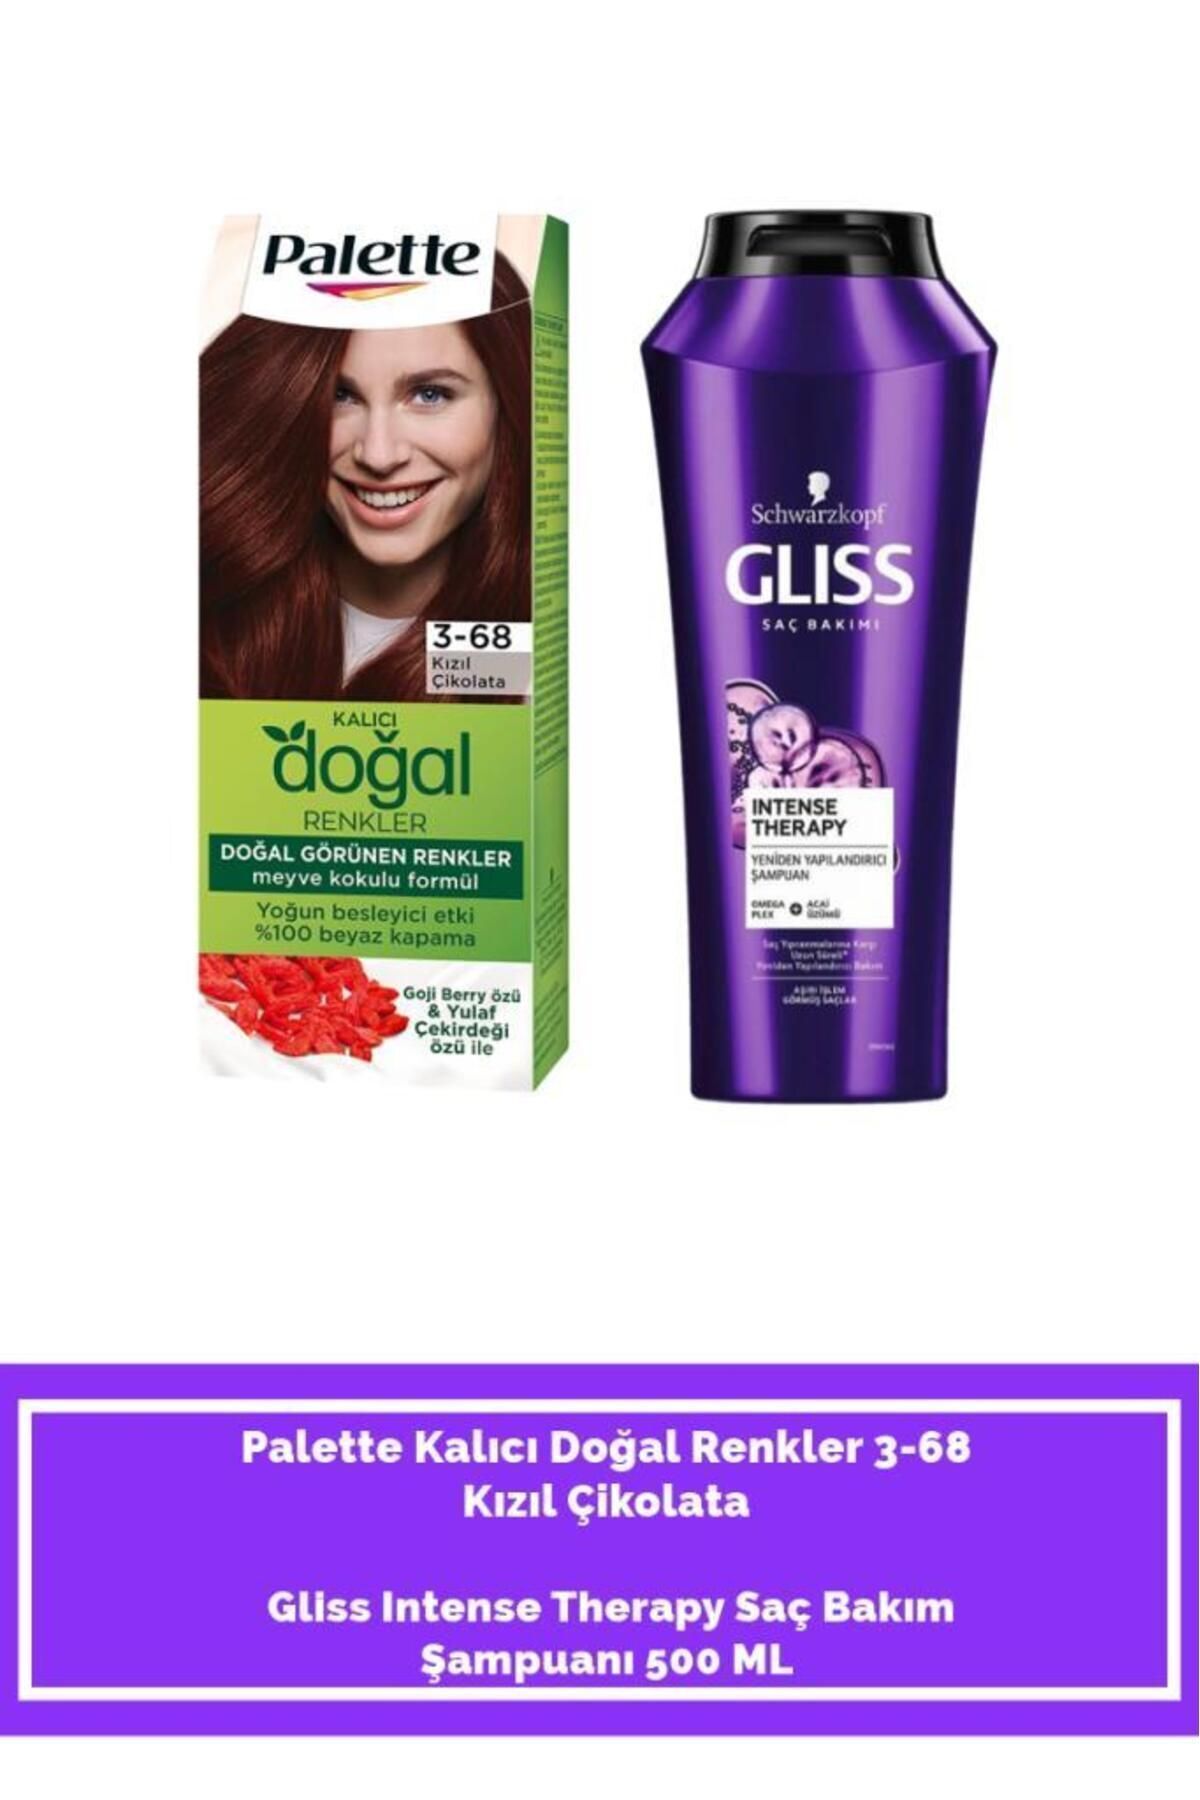 Palette Palette Kalıcı Doğal Renkler 3-68 Kızıl Çikolata+ Gliss Intense Therapy Saç Bakım Şampuanı 500 ML